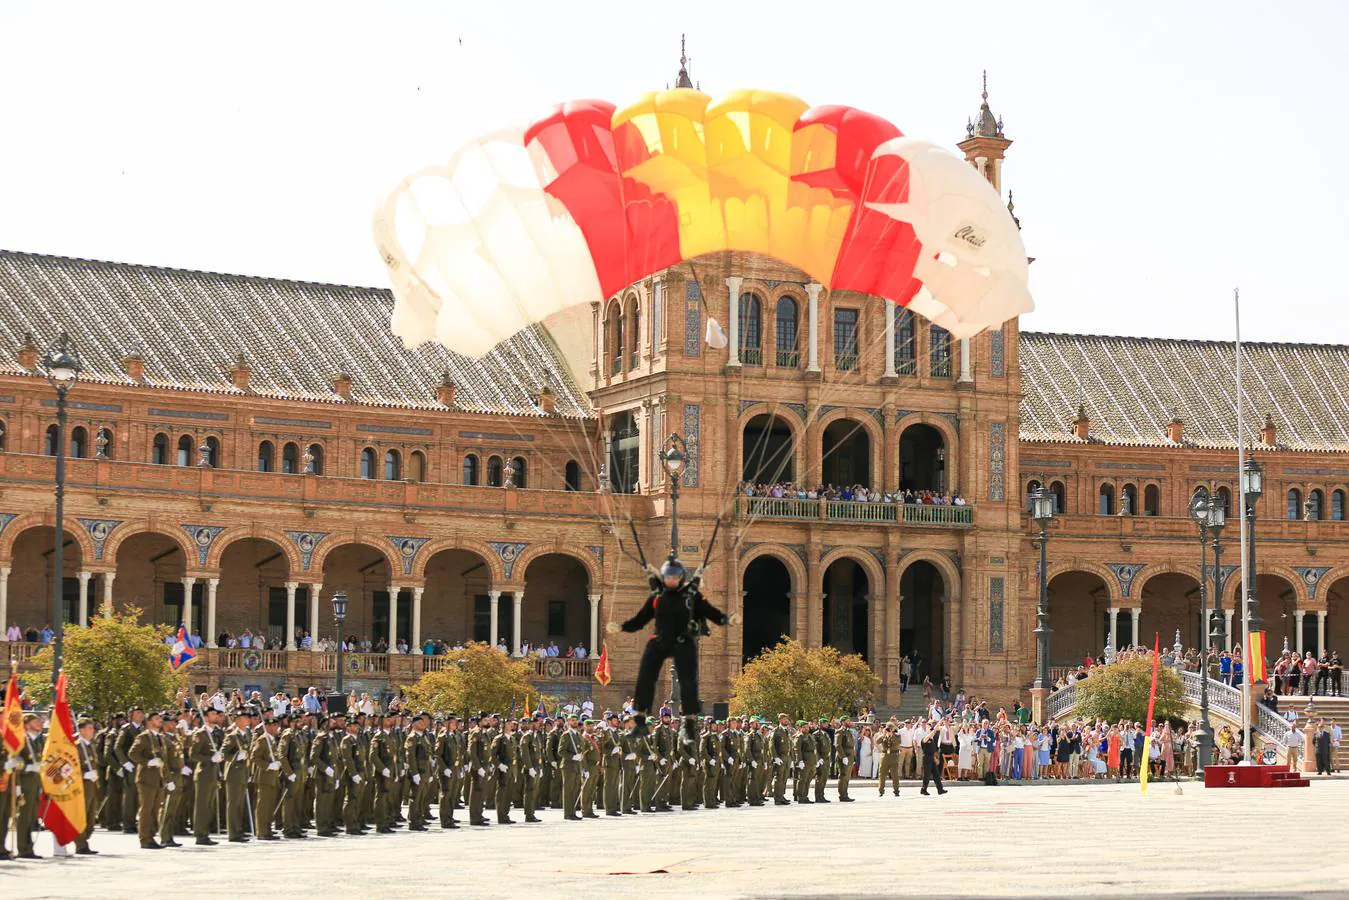 Miles de participantes, abundante público y autoridades en la jura de bandera de la Plaza de España